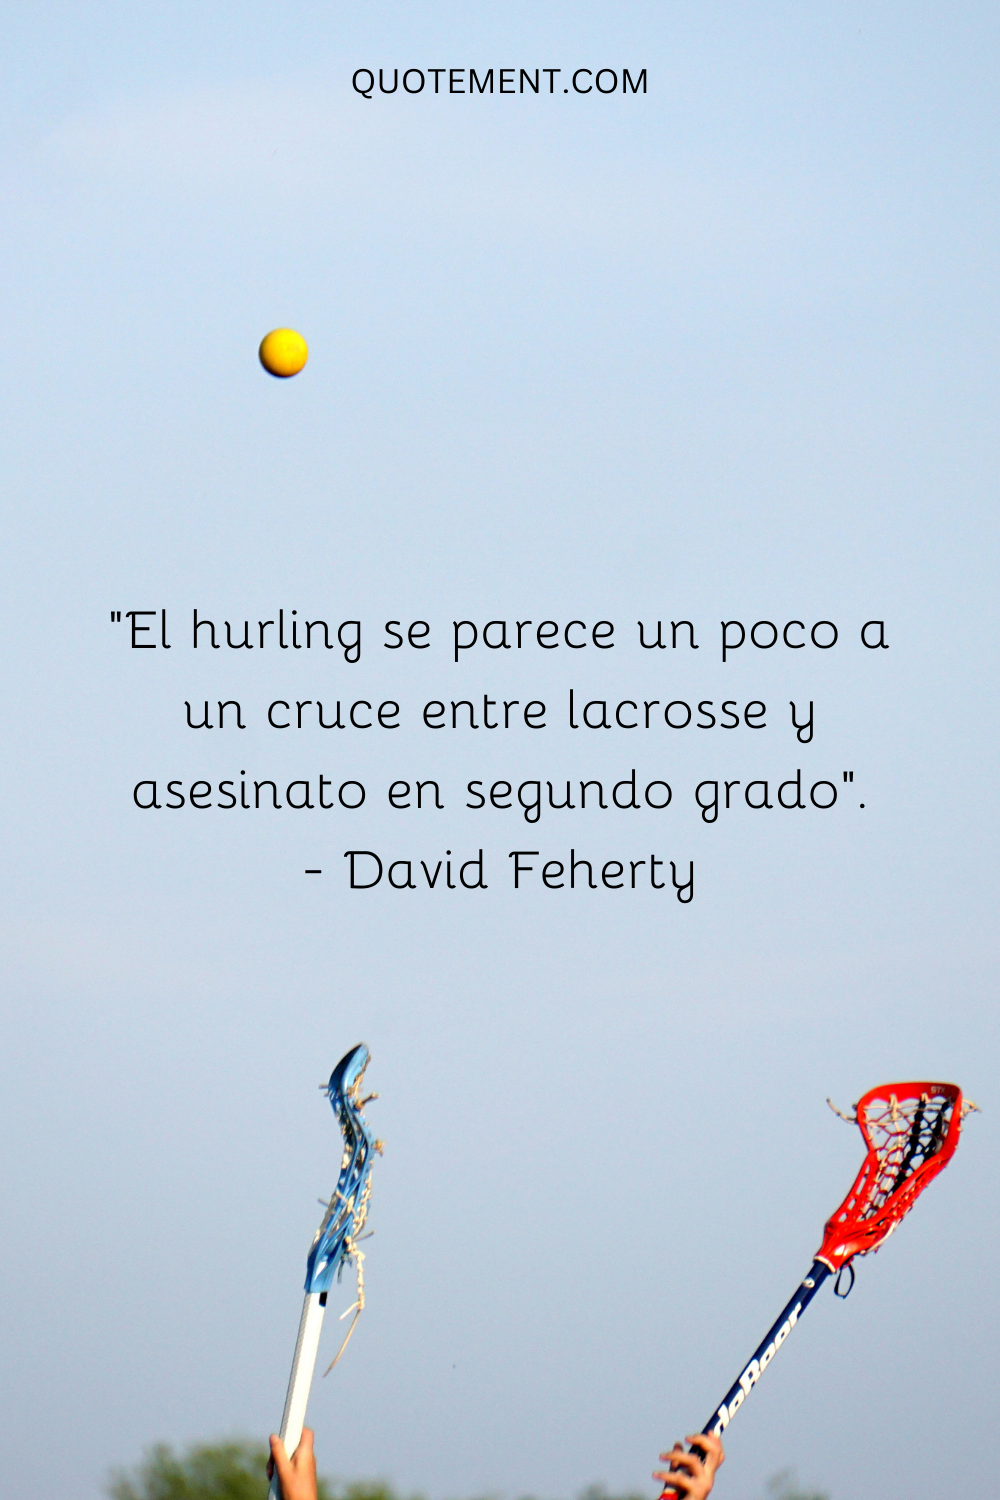 El hurling parece un cruce entre el lacrosse y el asesinato en segundo grado. - David Feherty